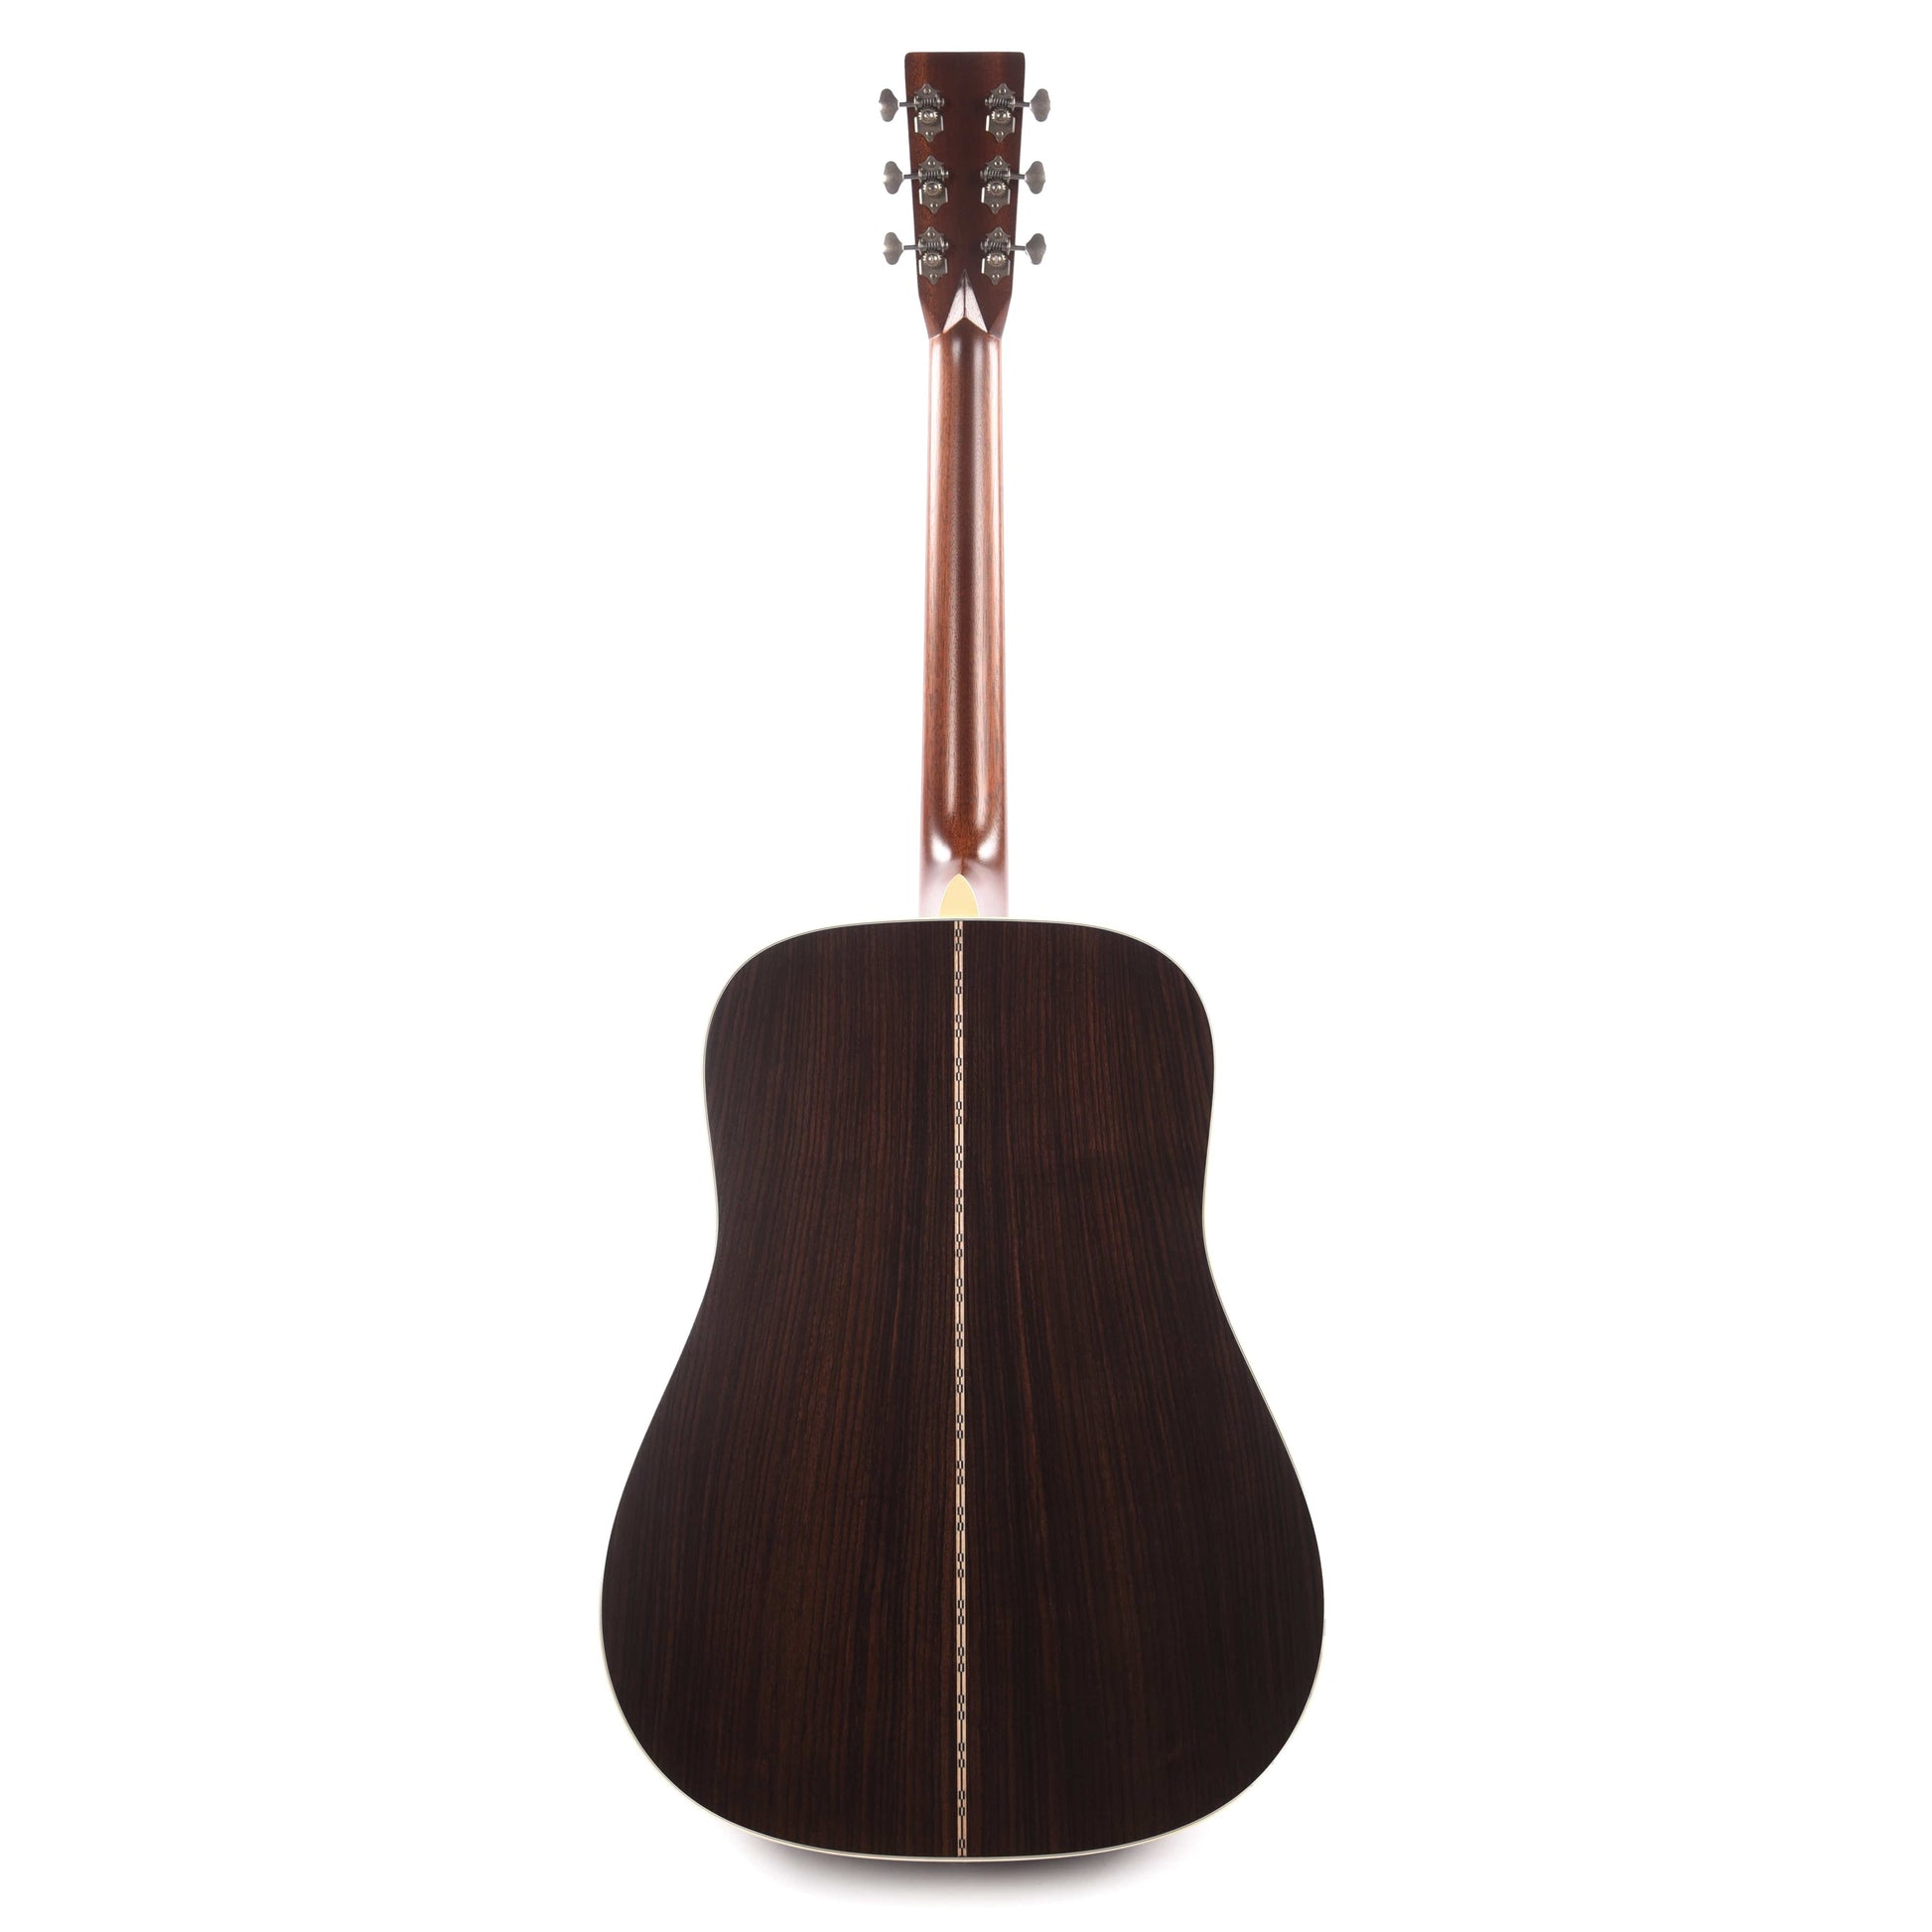 Martin Standard Series D-28 StreetLegend Natural Acoustic Guitars / Dreadnought